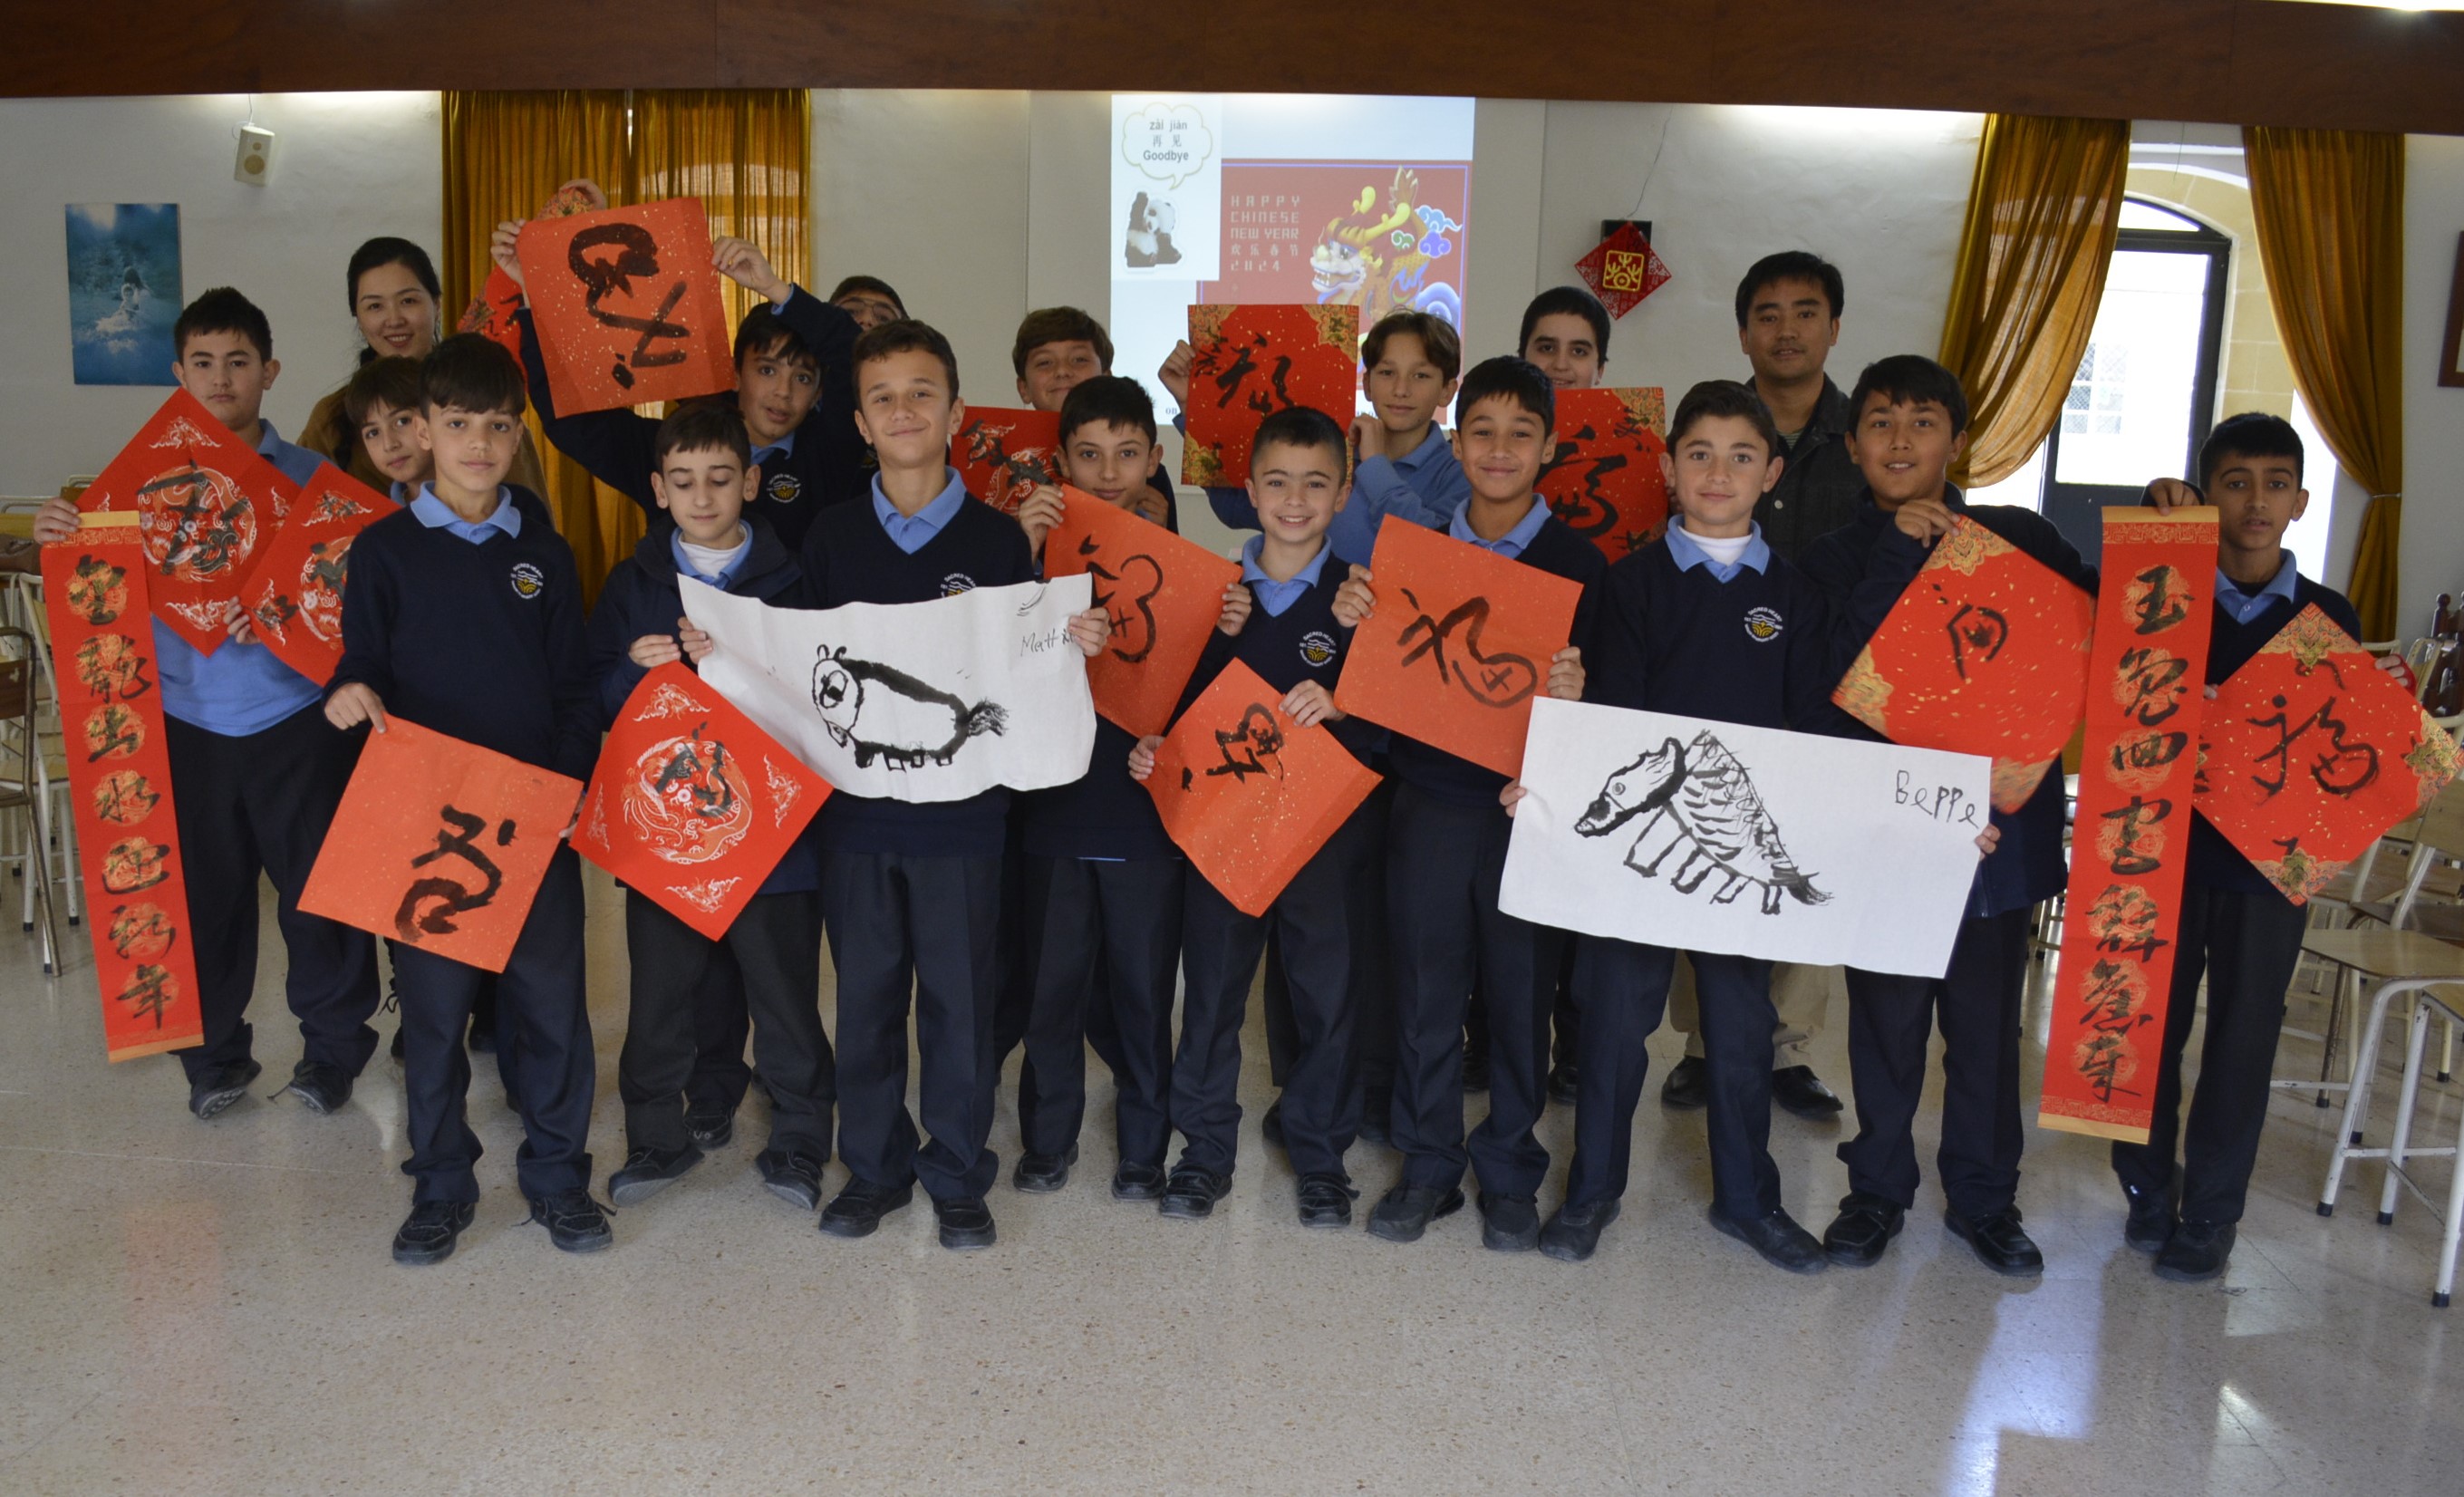 马耳他圣哈特中学举办“中国书画迎龙年”活动